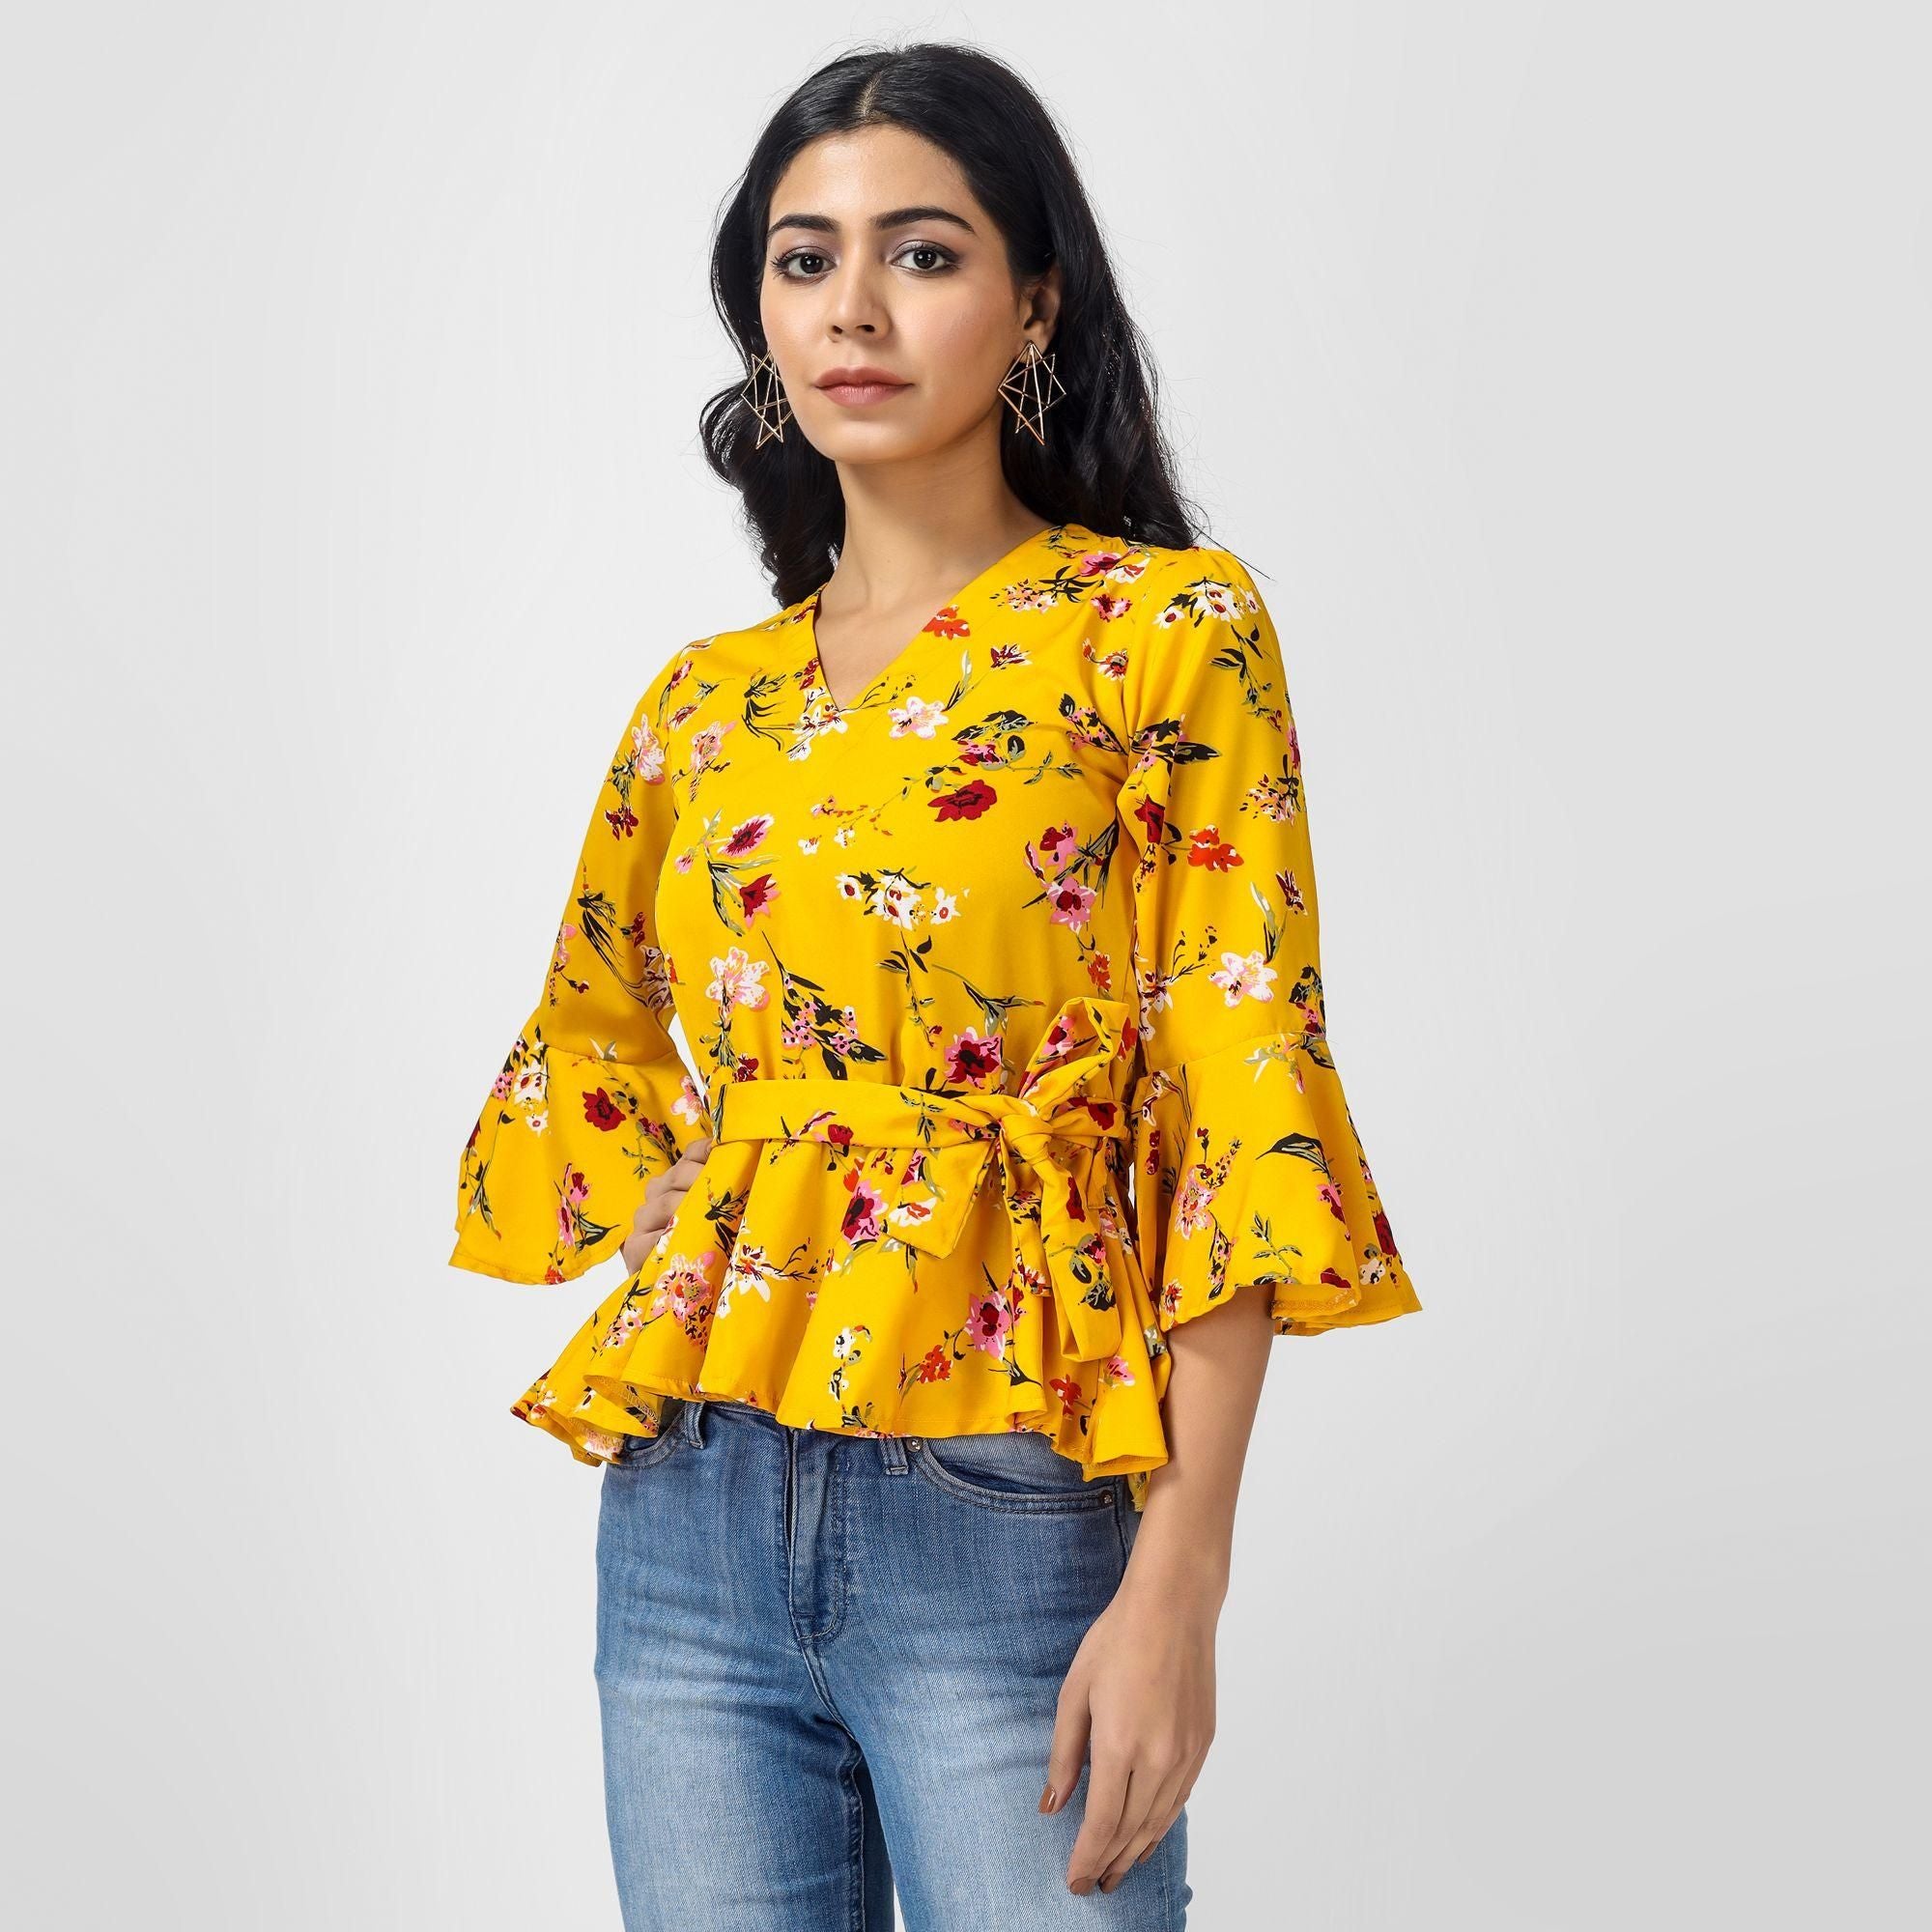 Oceanista Women's Crepe Floral Print Mustard Top